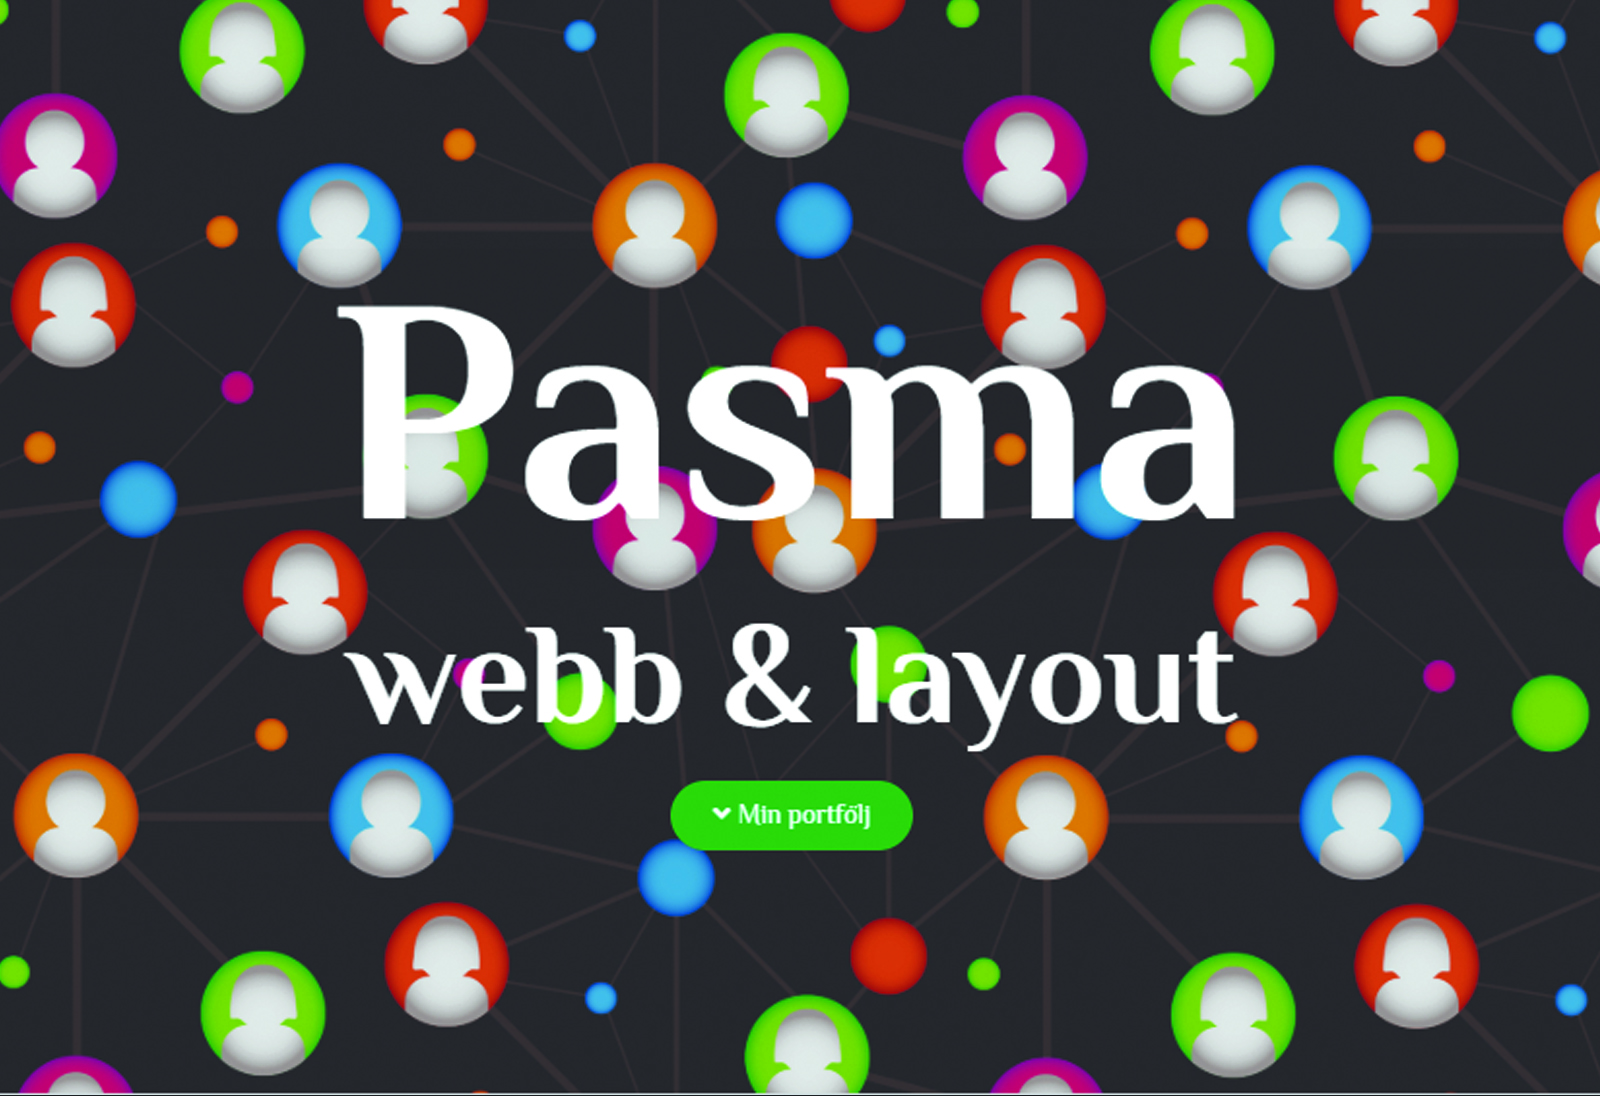 Du visar för närvarande Pasma webb&layout